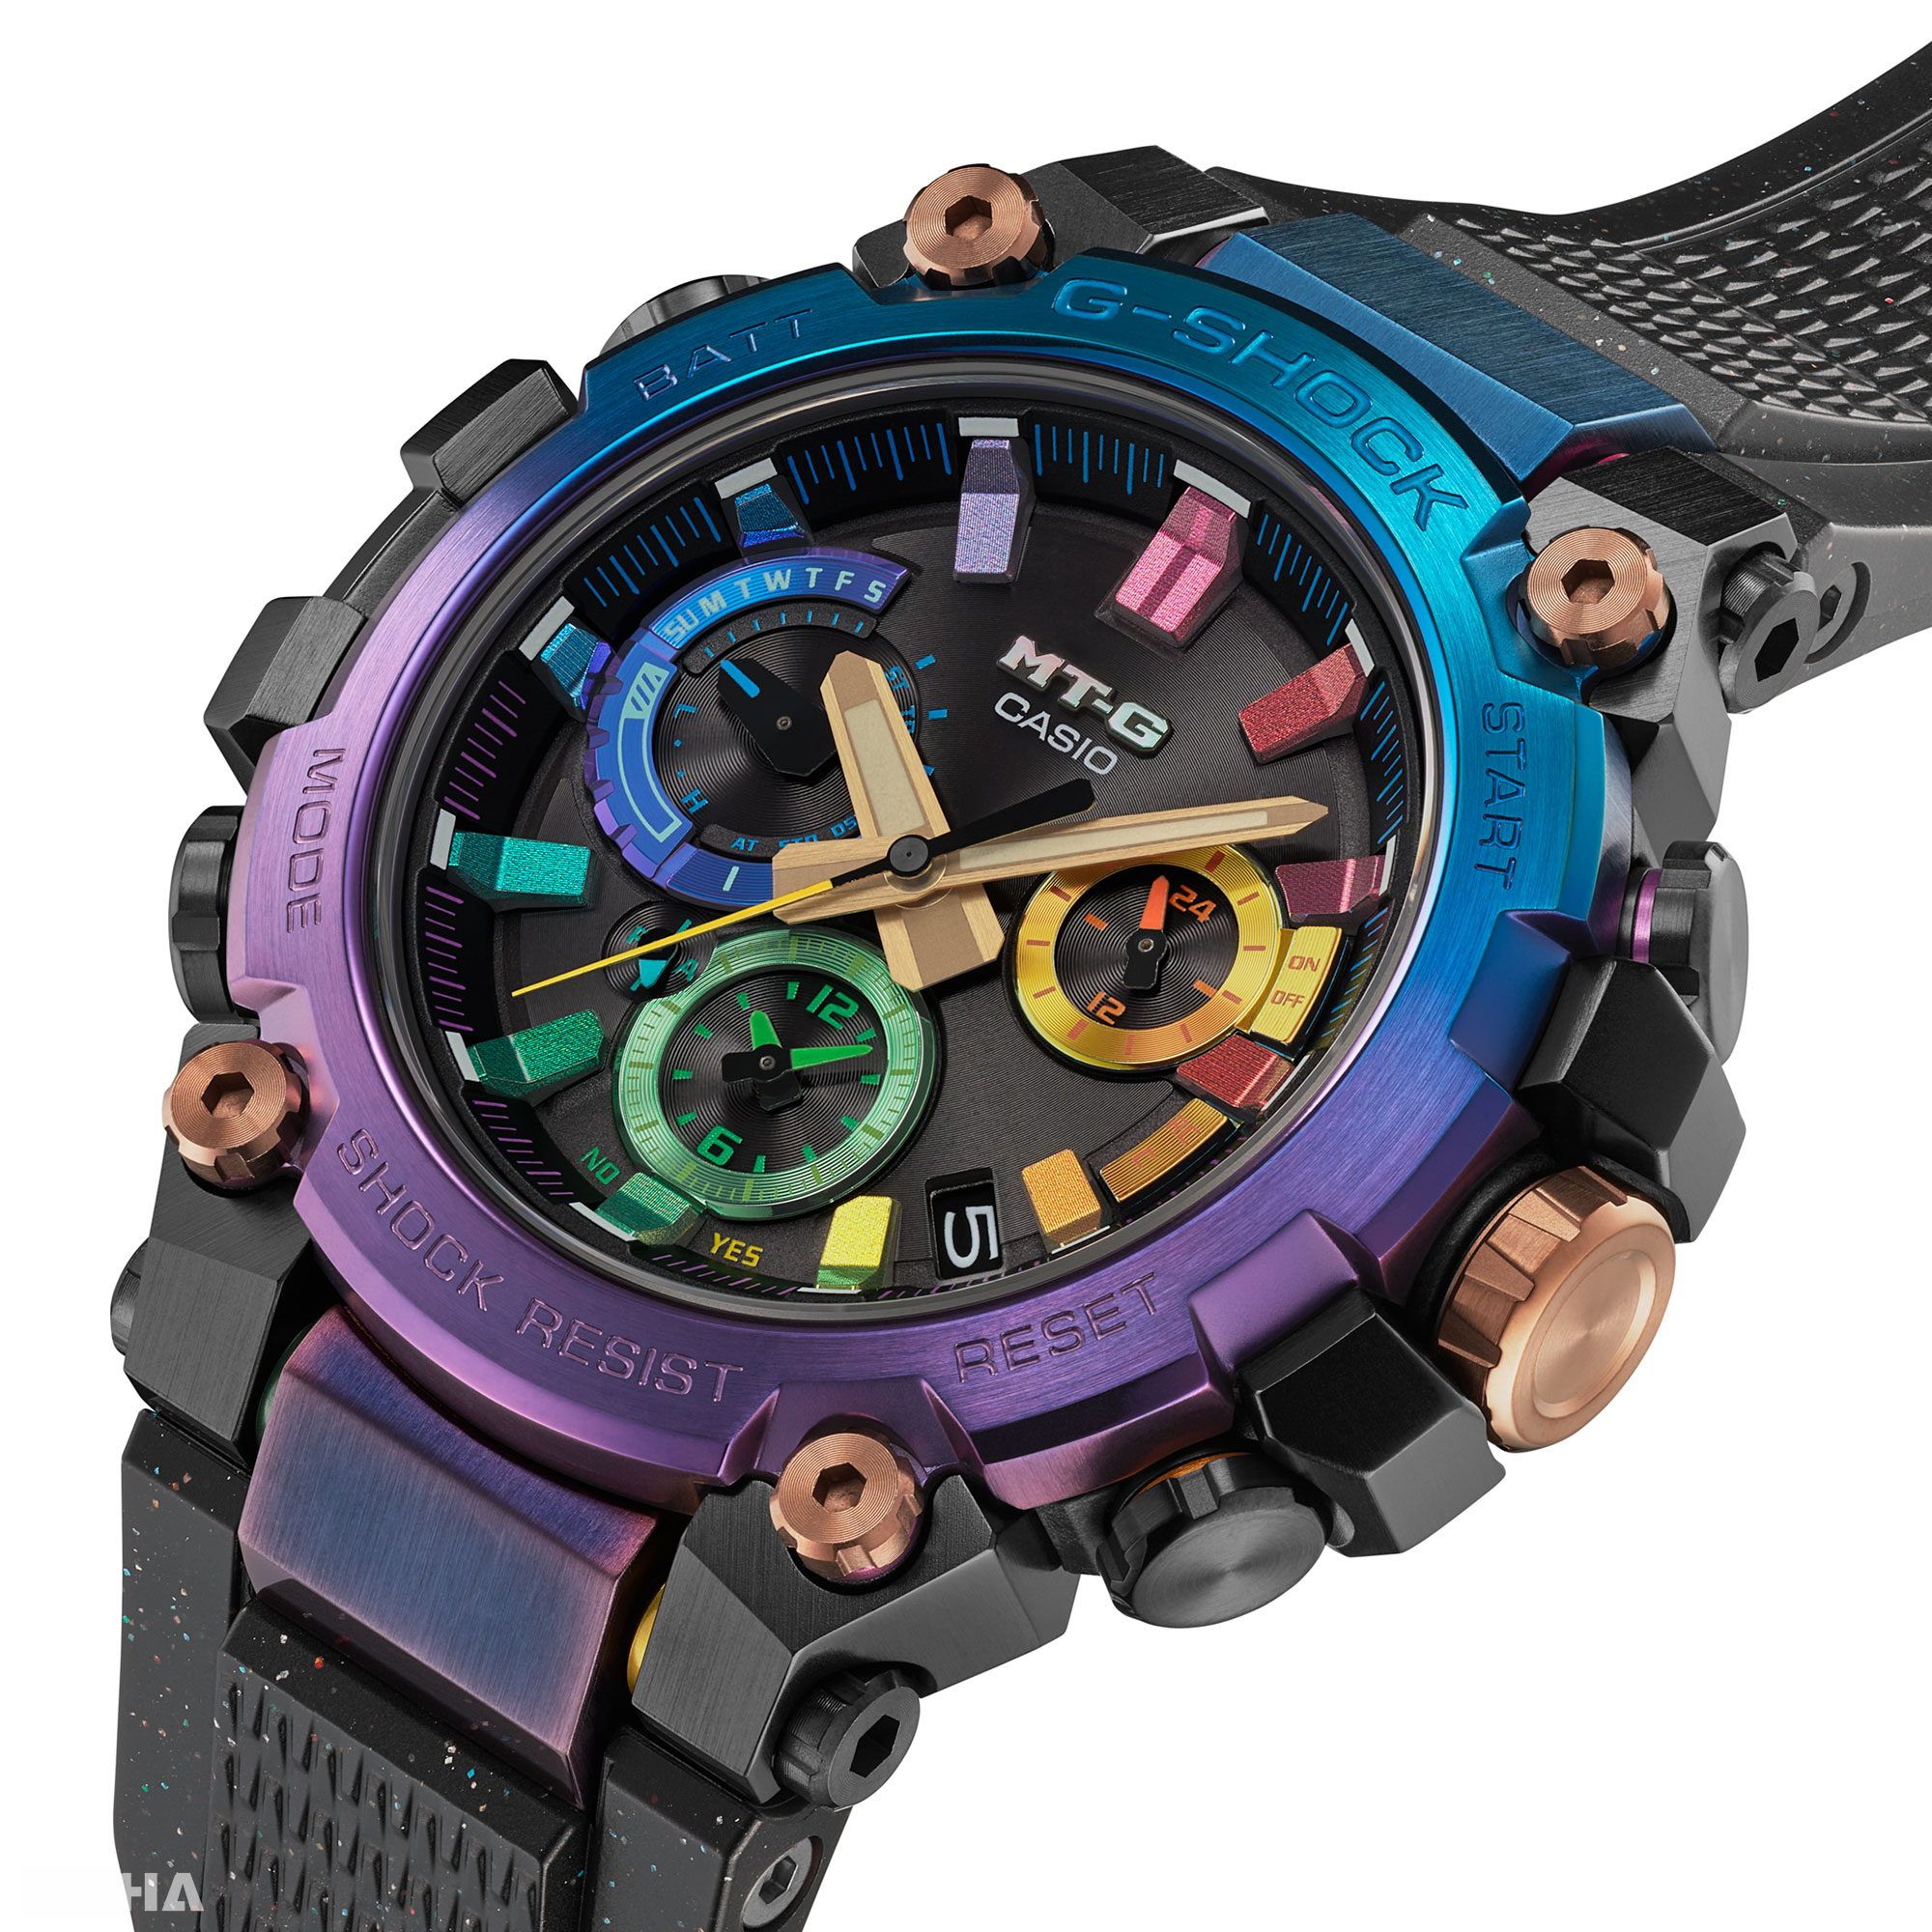 不鏽鋼金屬錶圈至錶耳處經過藍色和紫色漸變IP處理，時刻和錶盤也飾有多色星雲風格的設計